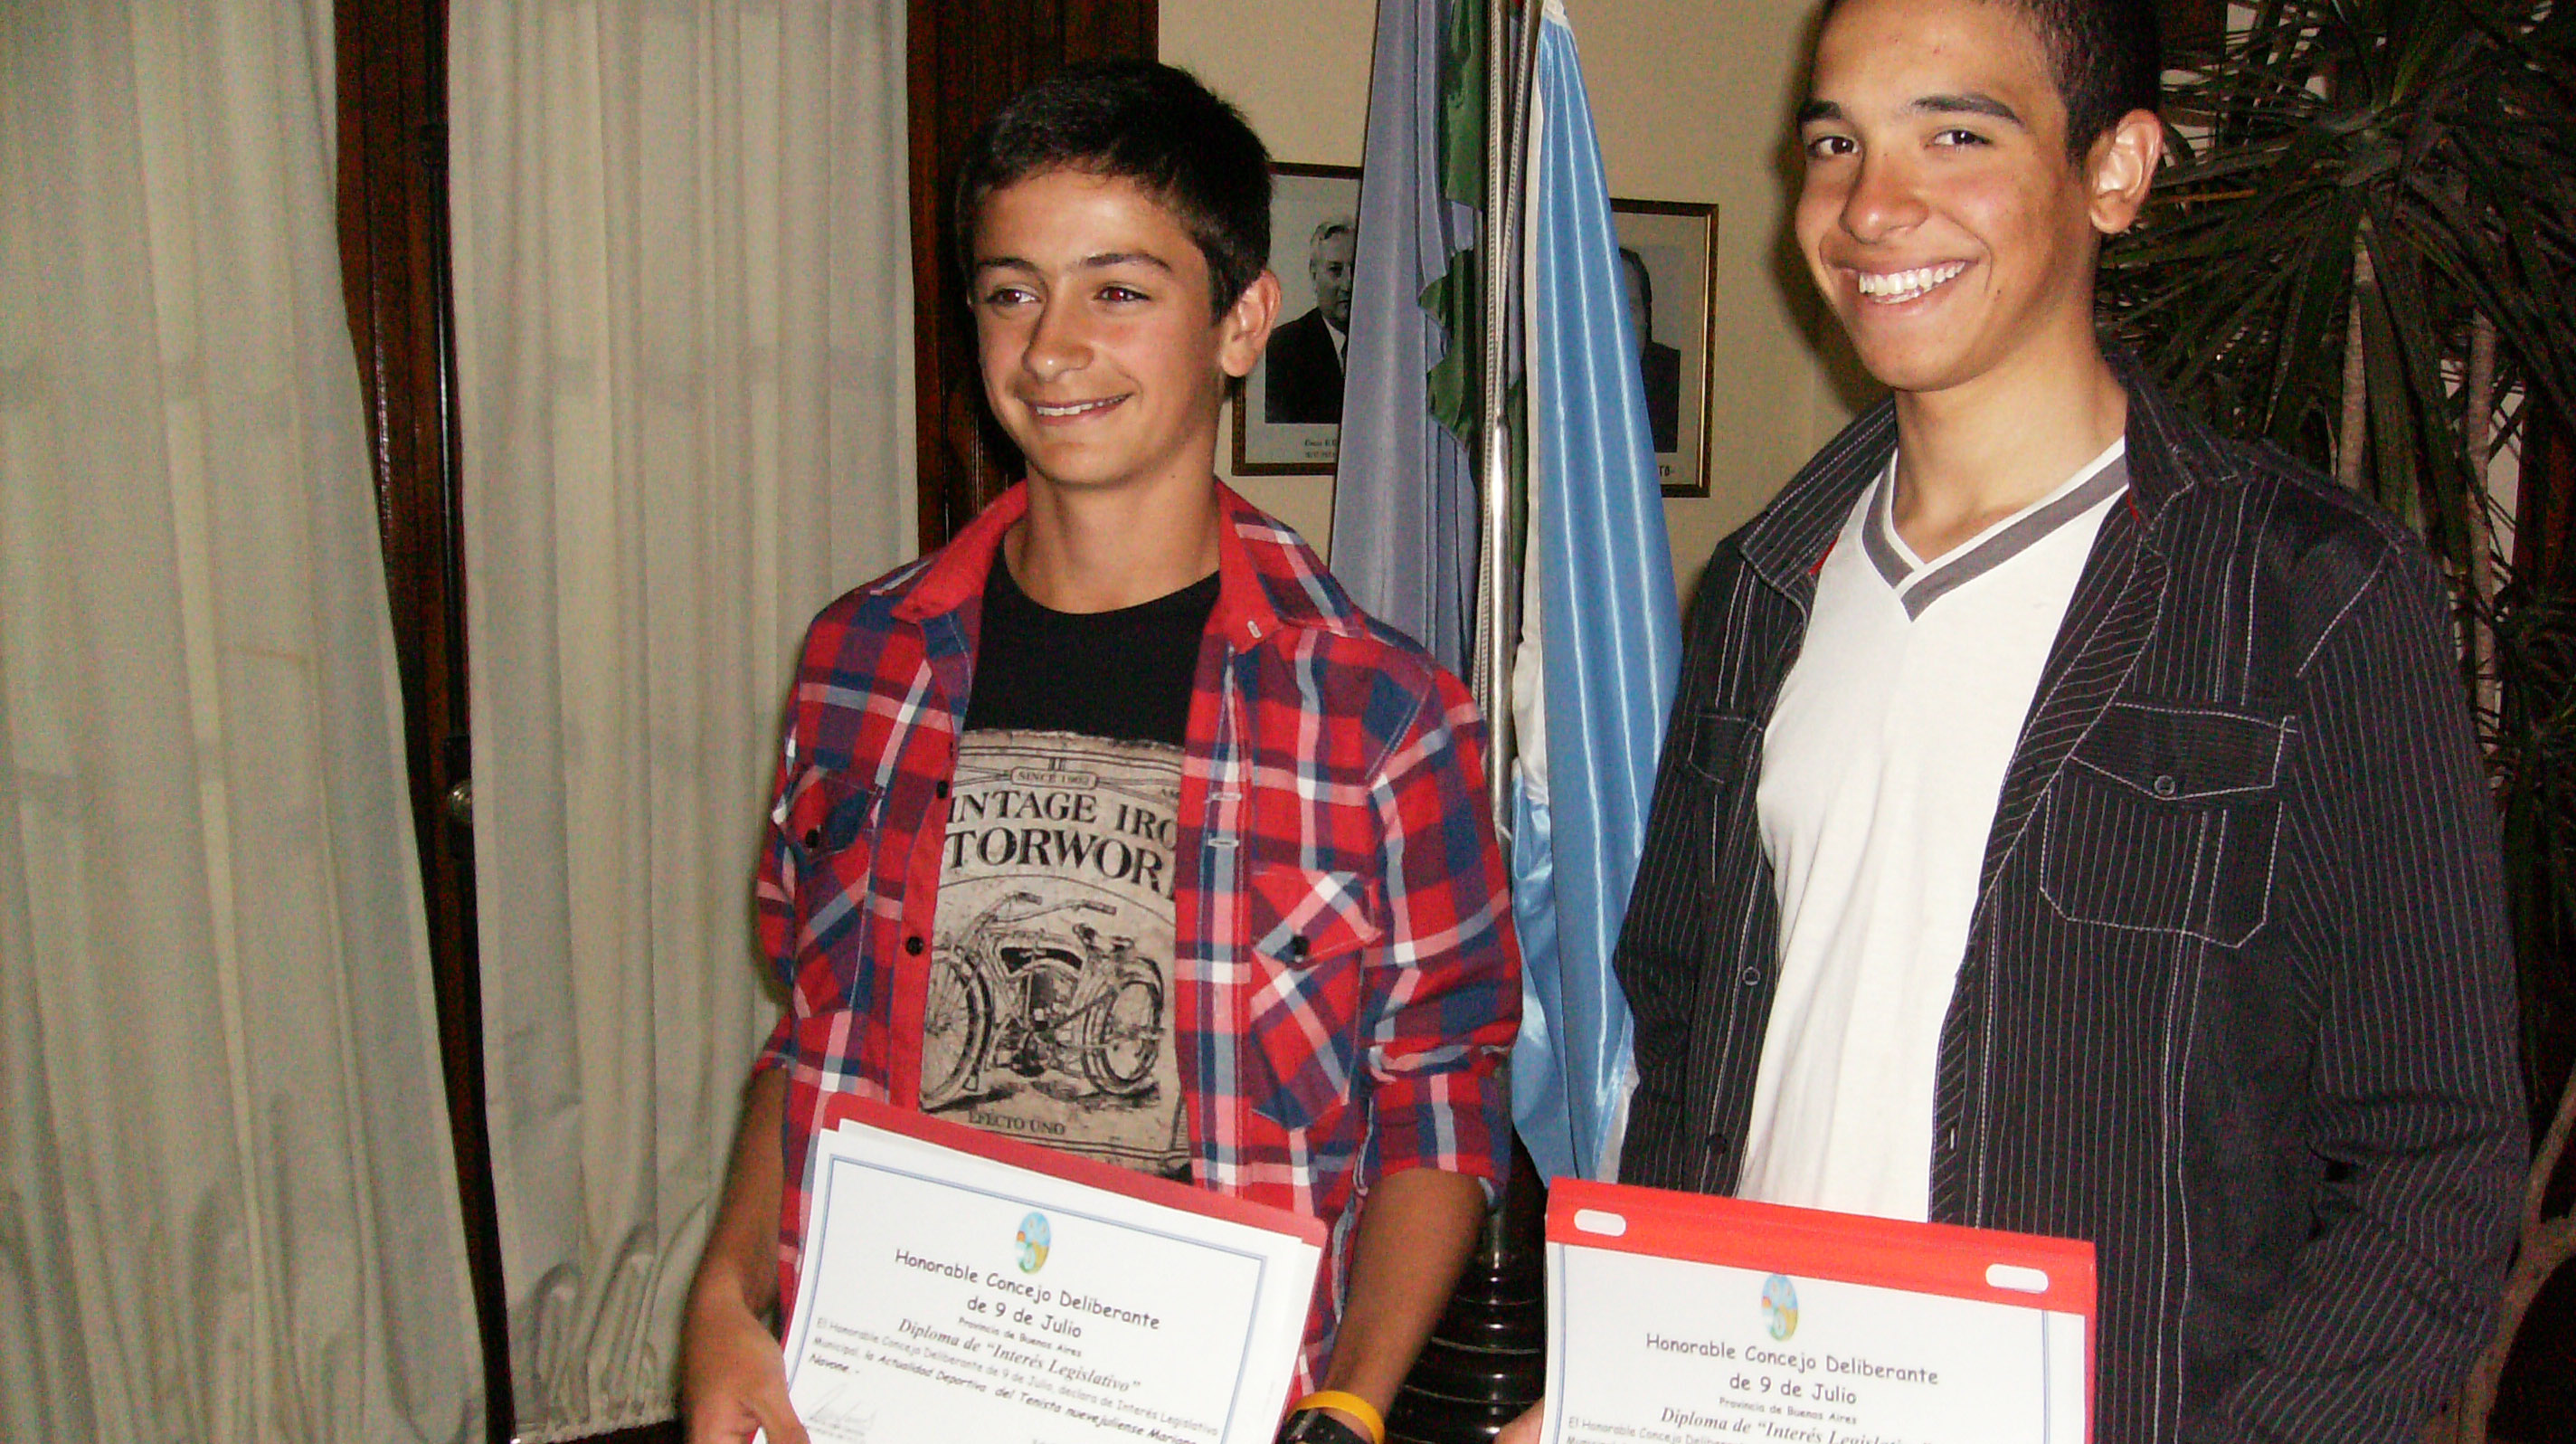 Los concejales homenajearon al tenista Navone, al ciclista Martínez y a Manhala